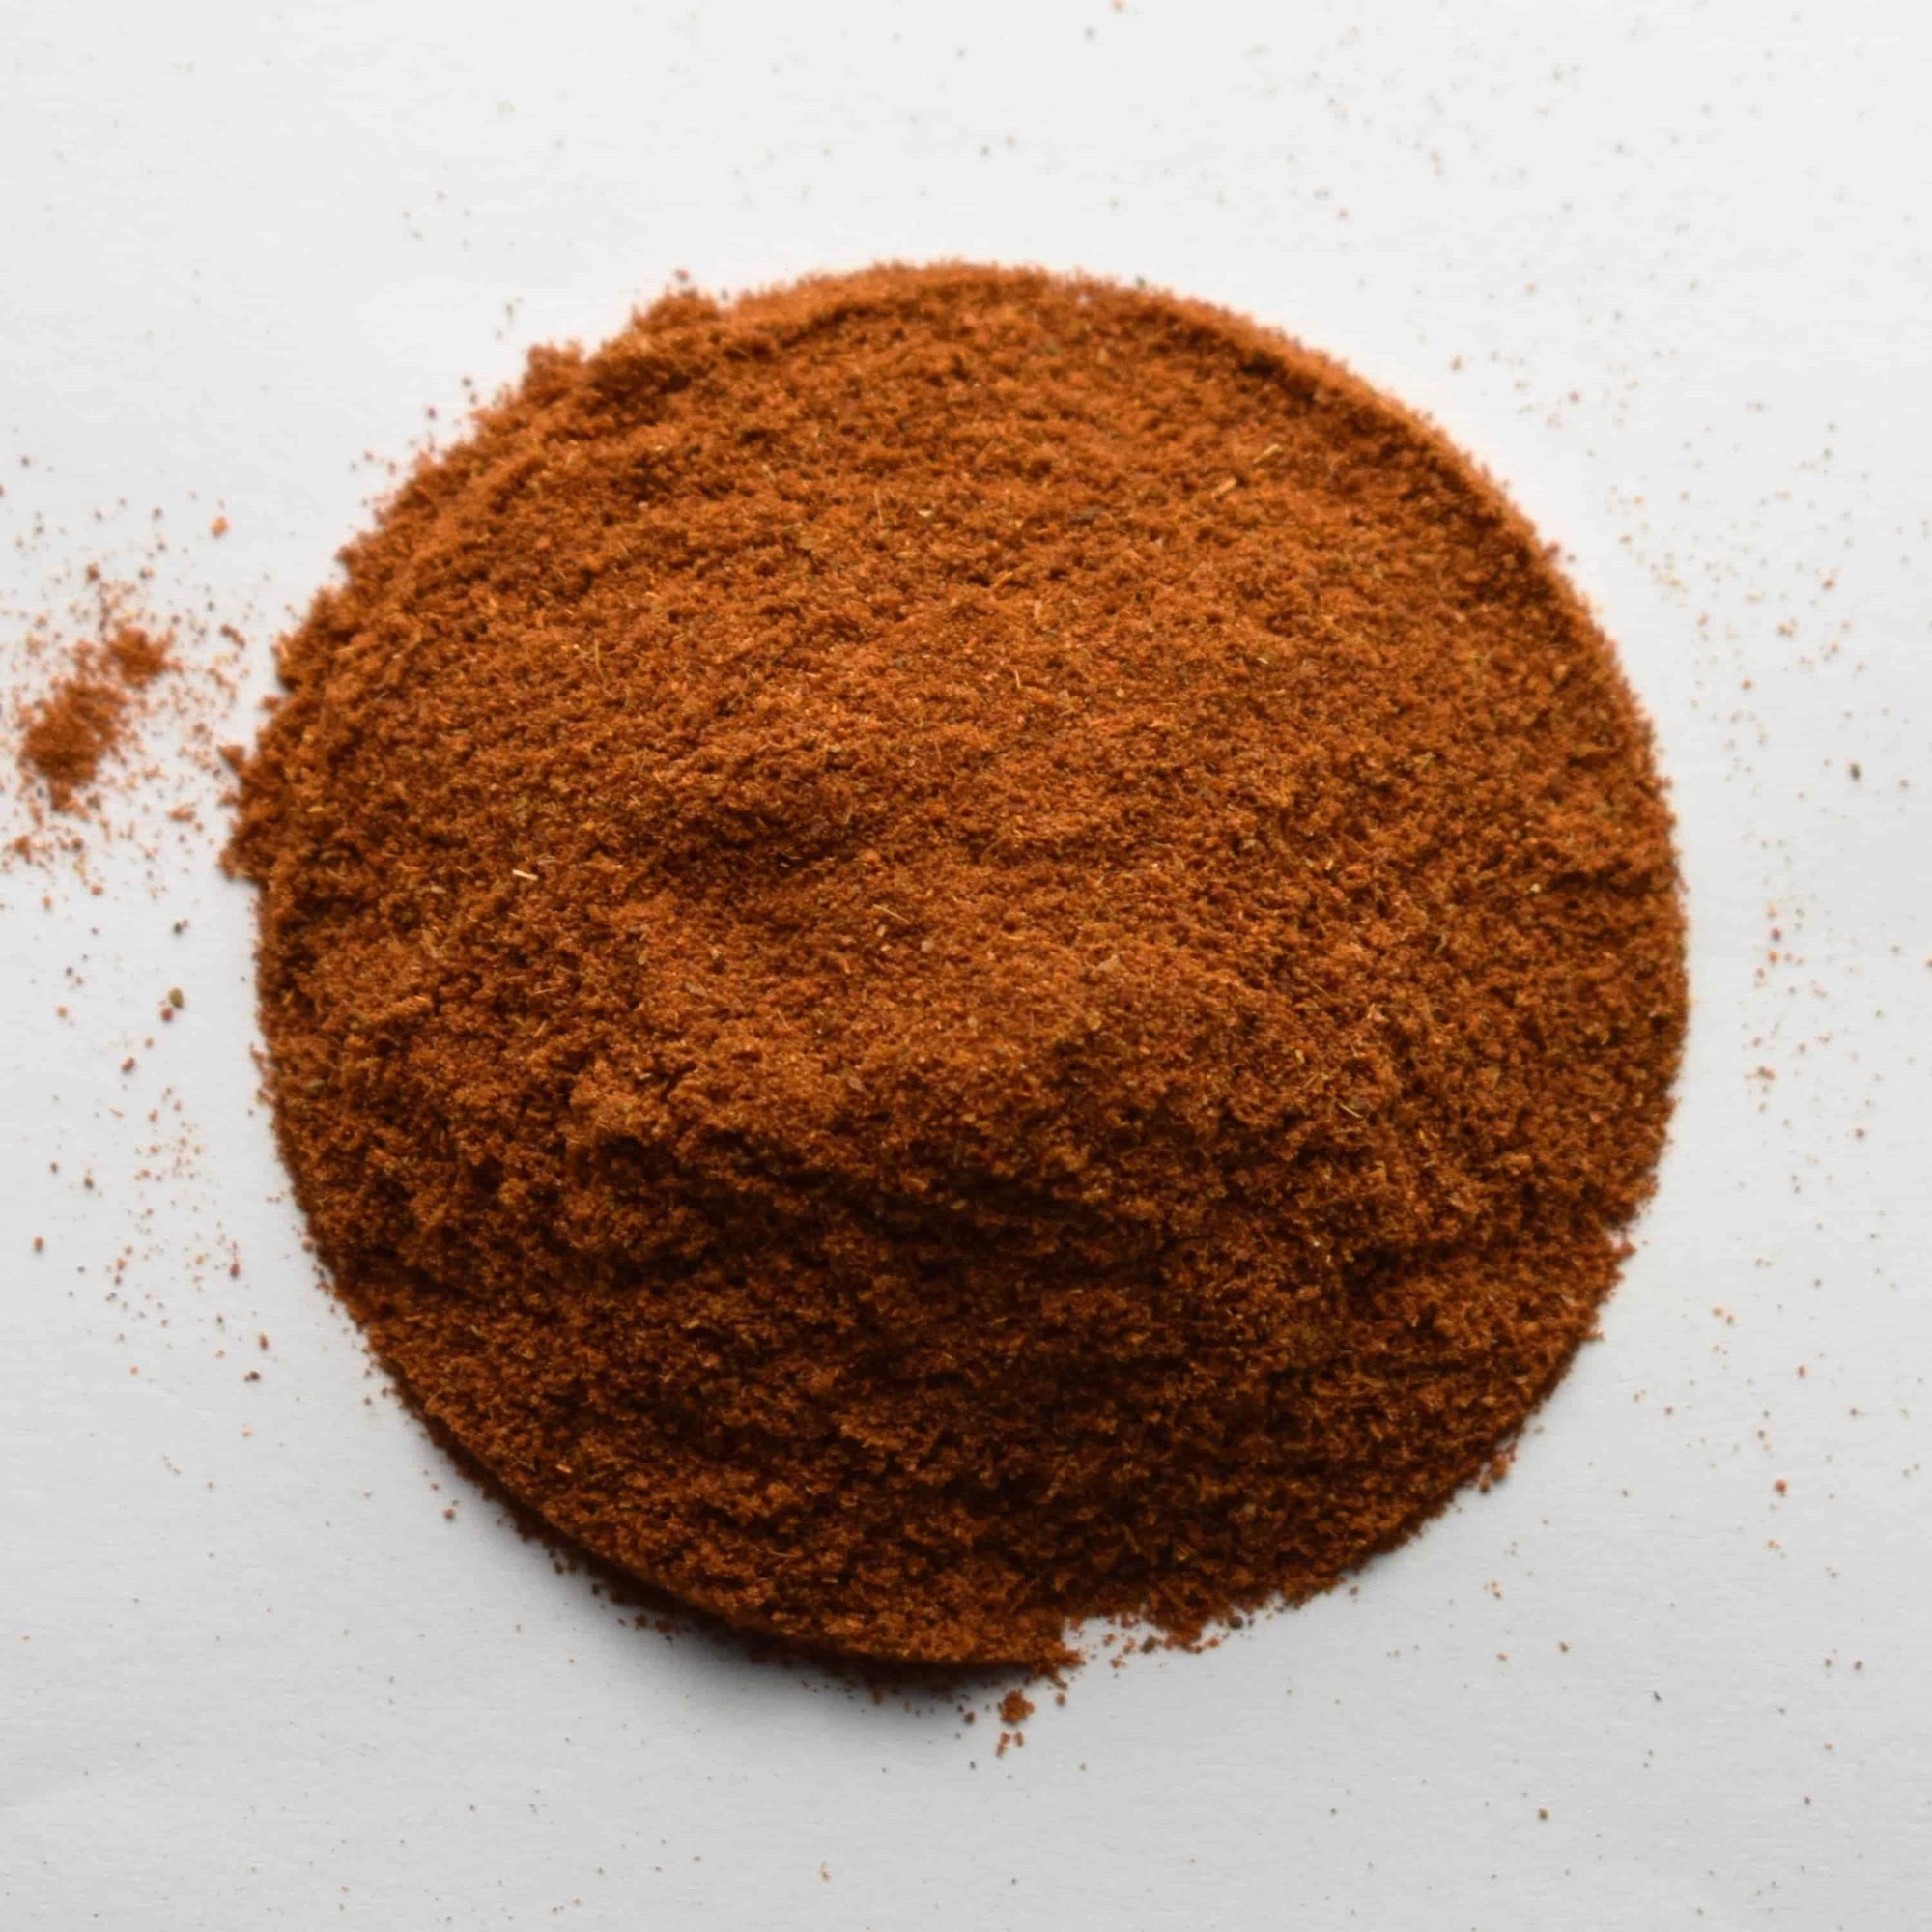 Mexican Chili Powder - The Tea & Spice Shoppe